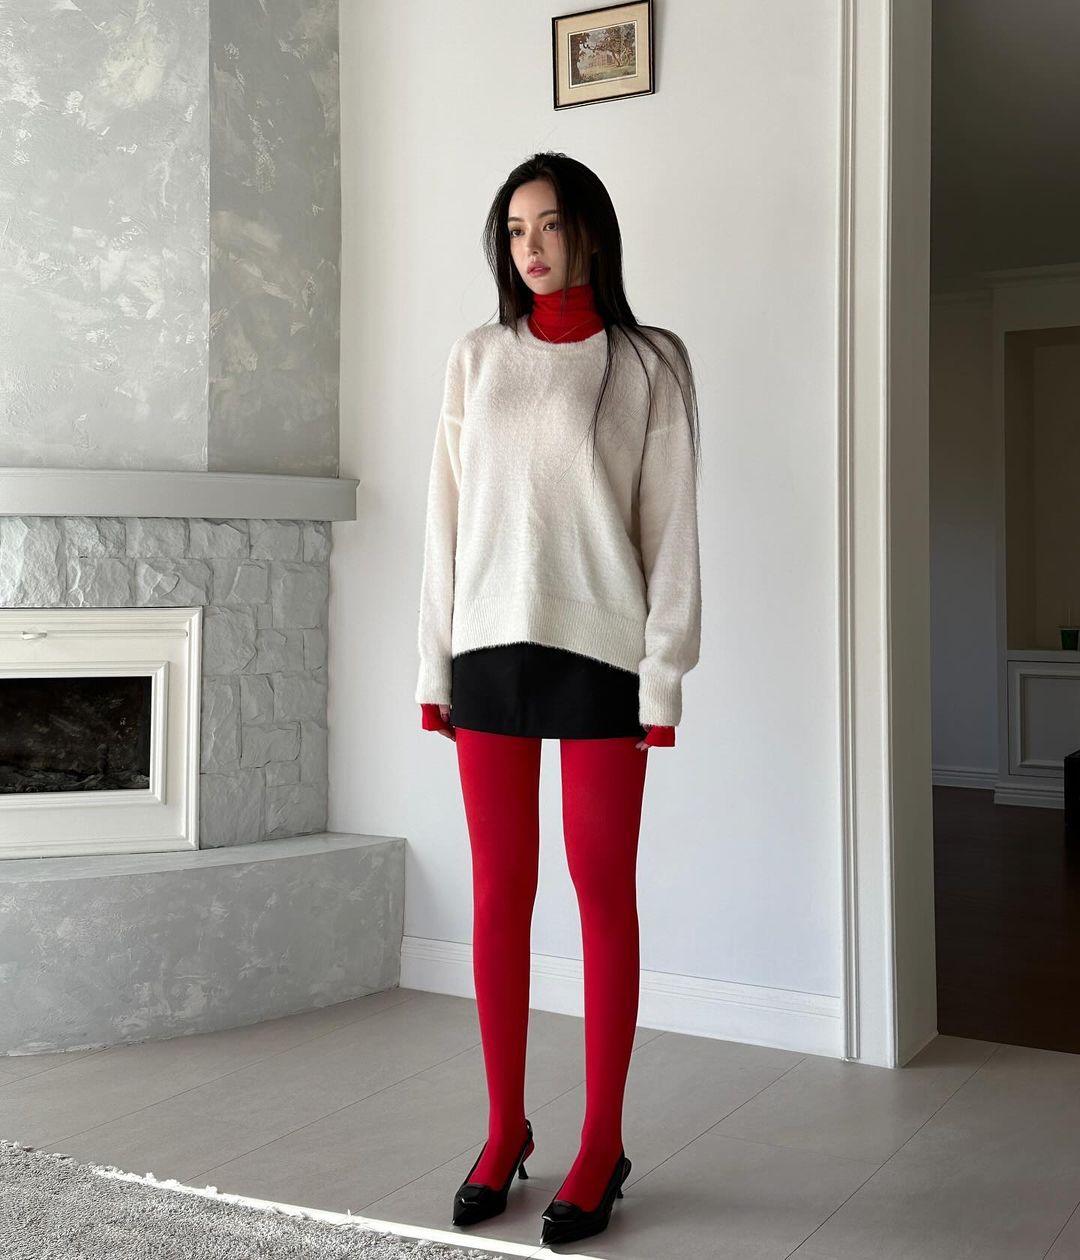 Cách phối đồ với quần tất lưới màu đen mỏng mặc mùa đông vô cùng sành điệu  | Fashion, Sweater dress, Style